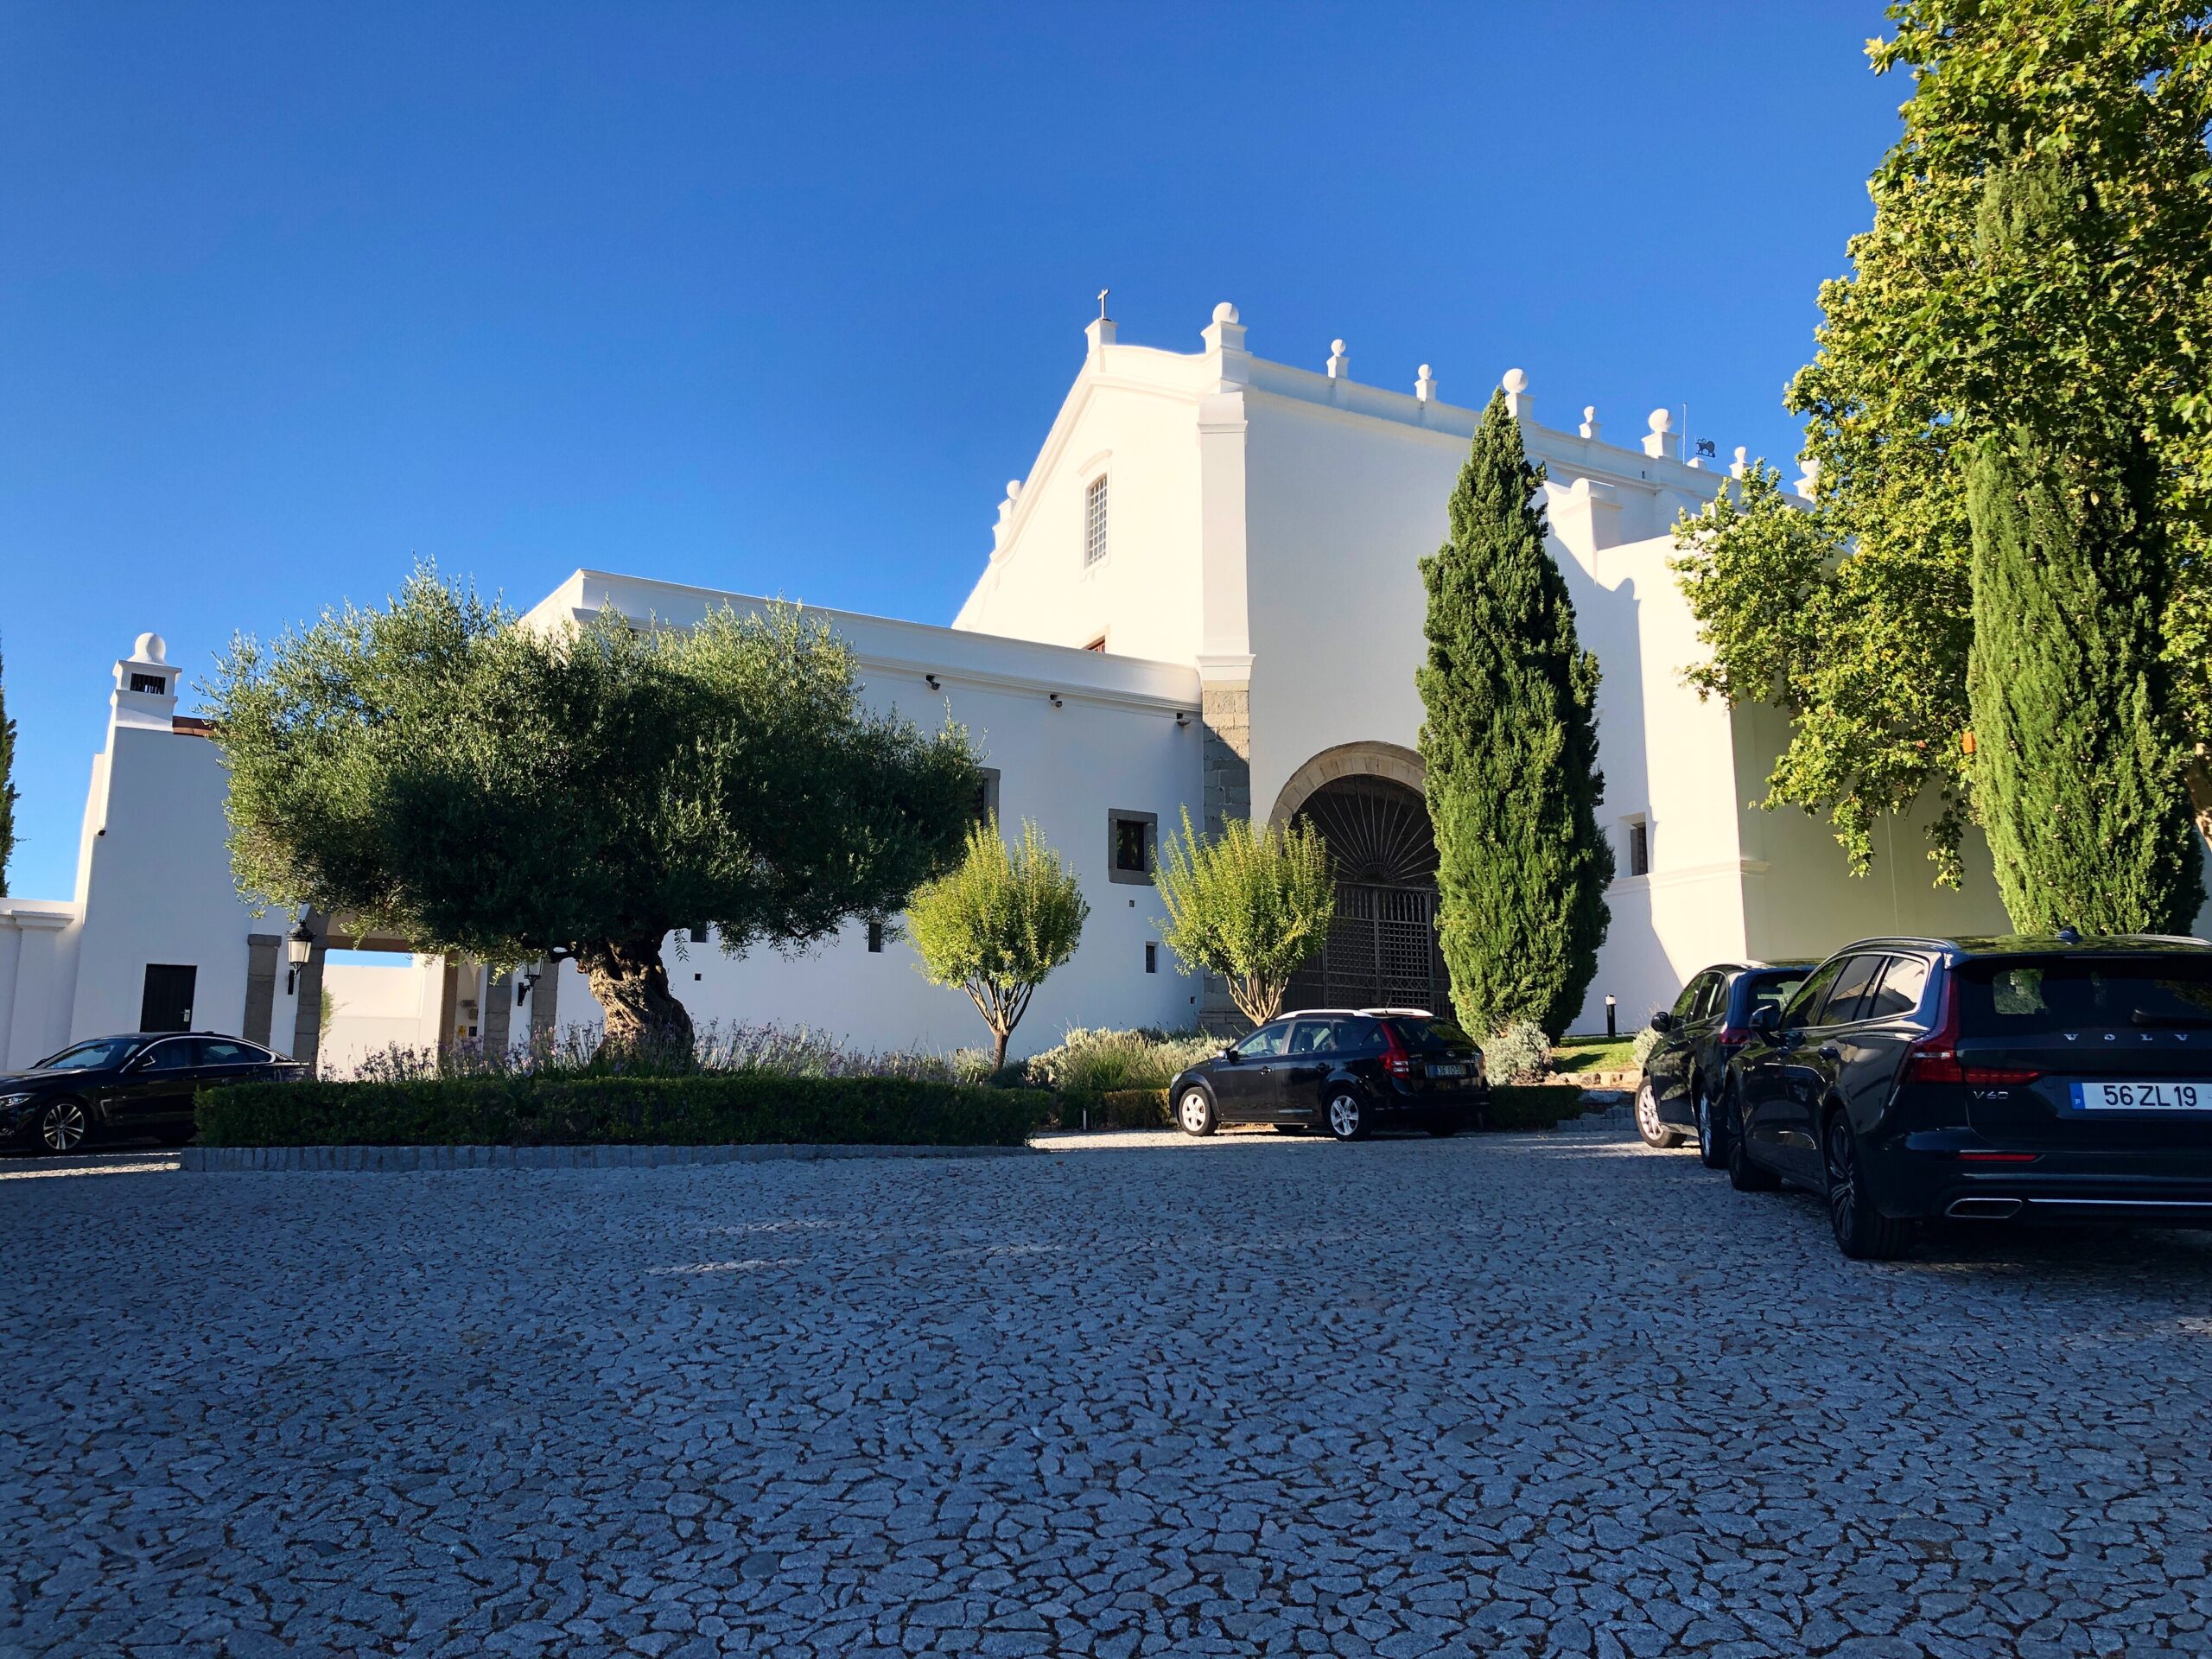 Review: Convento do Espinheiro, Évora